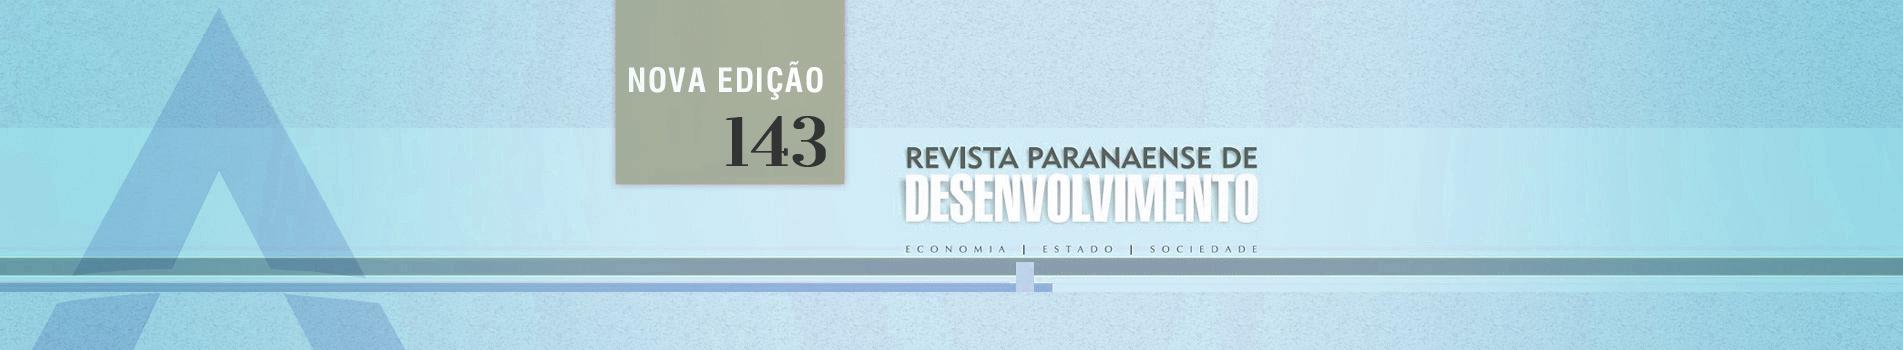 banner_revista_paranaense_de_desenvolvimento_143.jpg